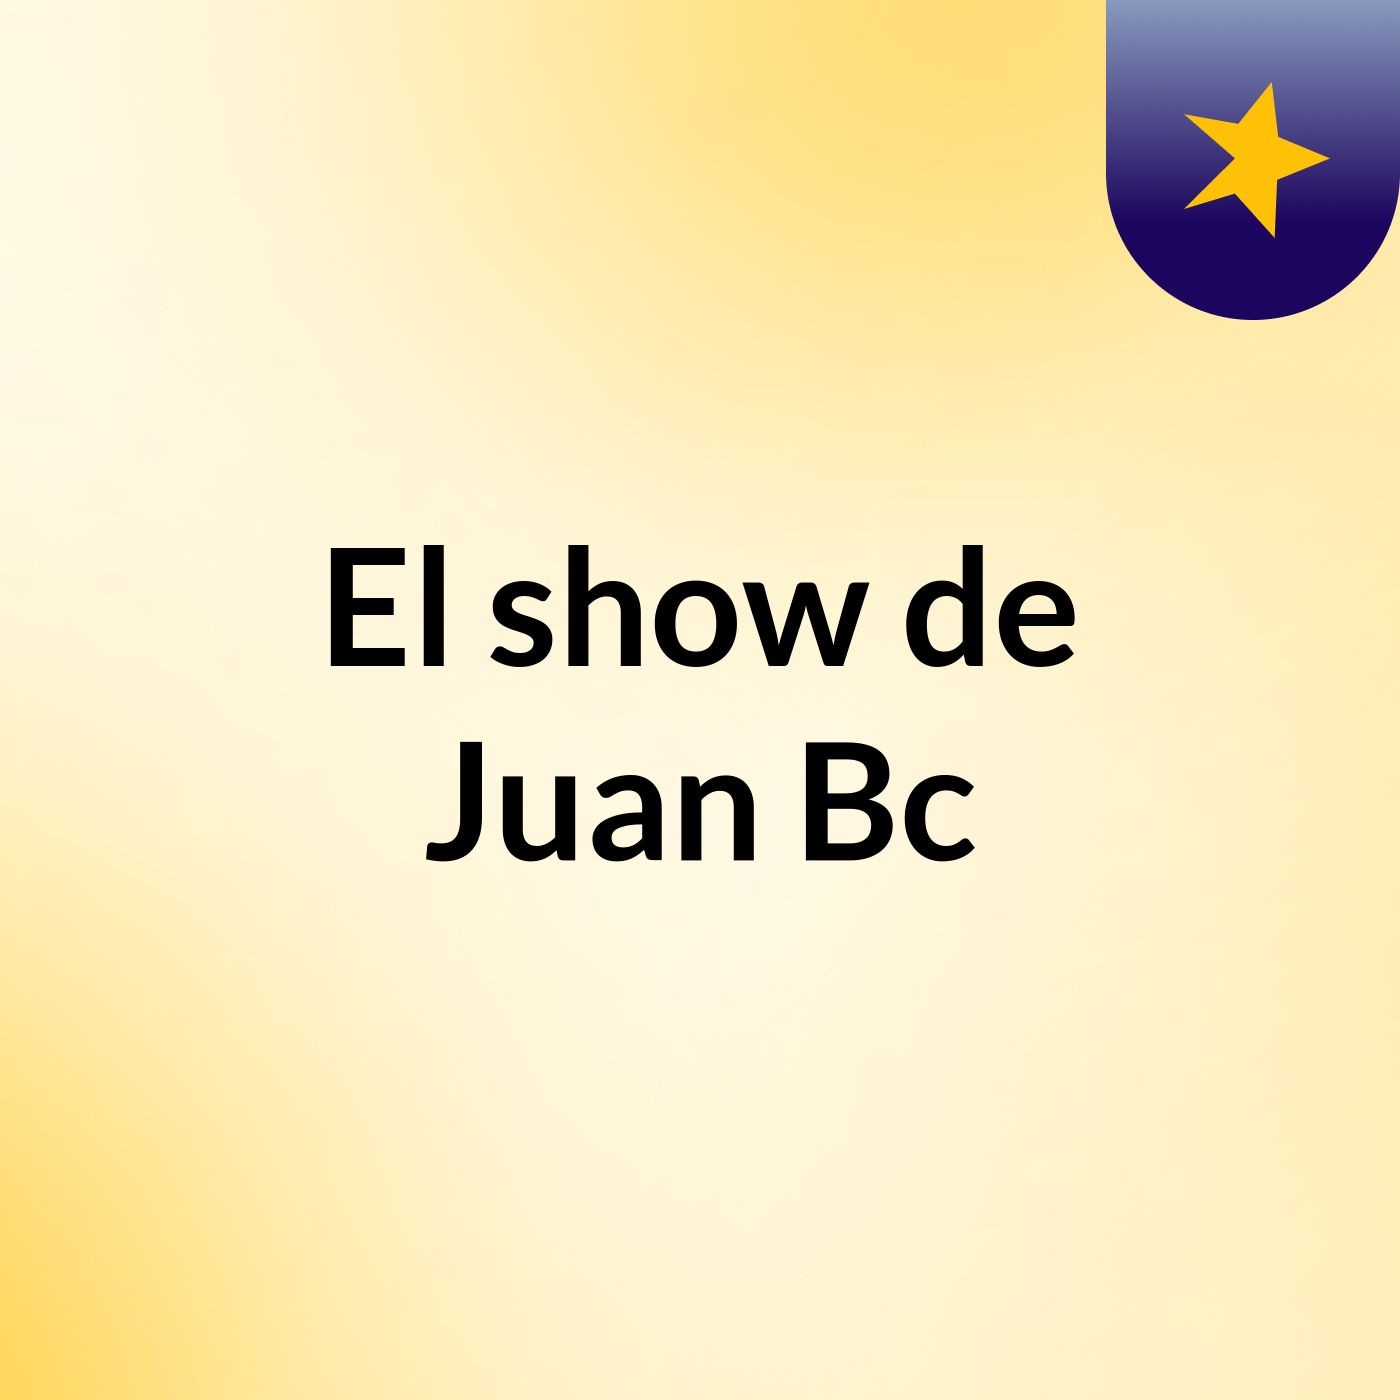 El show de Juan Bc